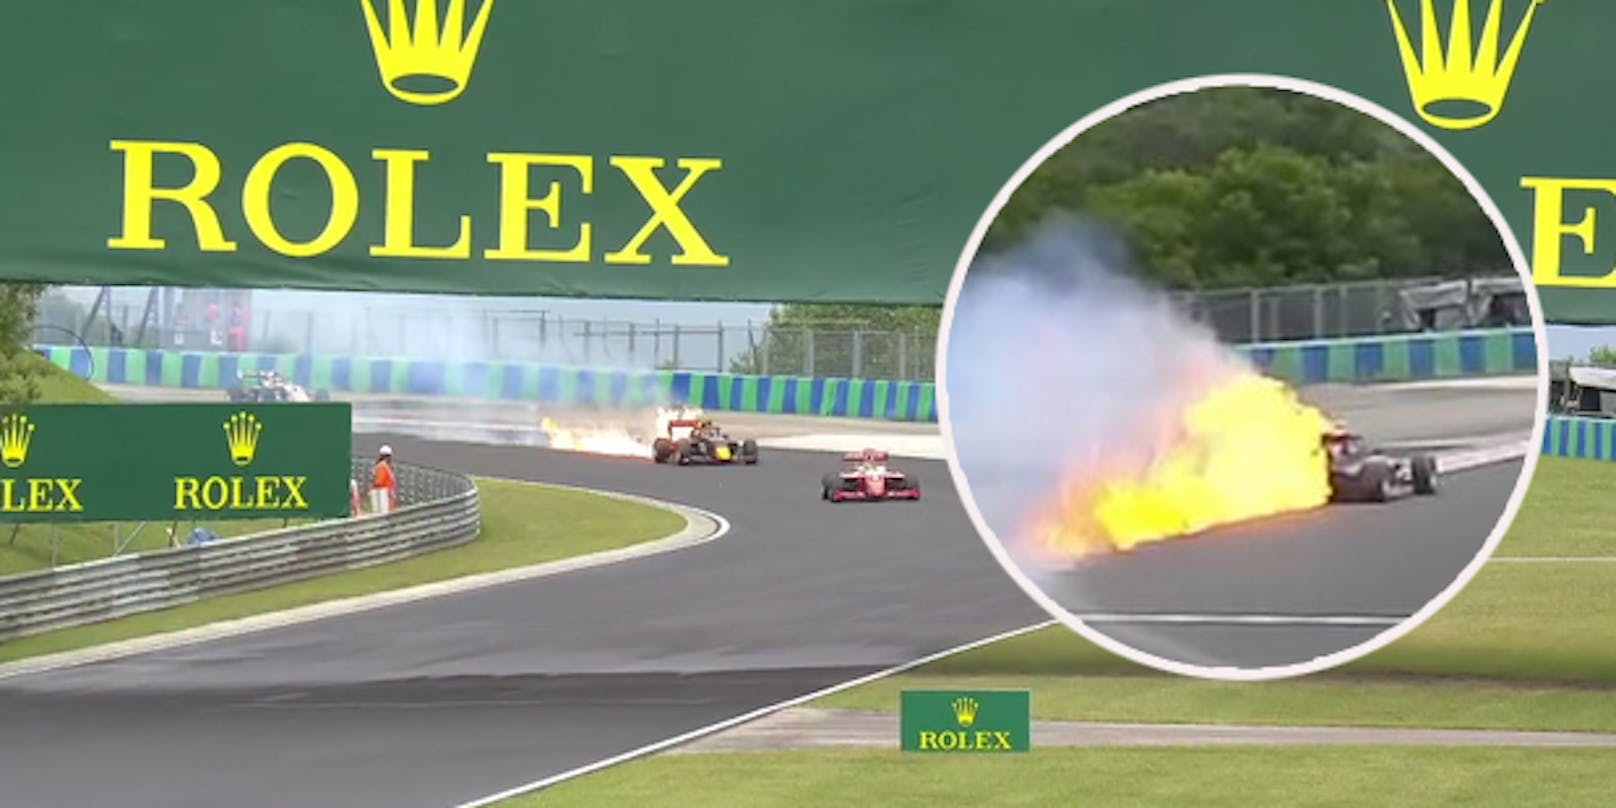 Formel-3-Pilot Liam Lawson verliert Öl. Sein Heck geht in Flammen auf.